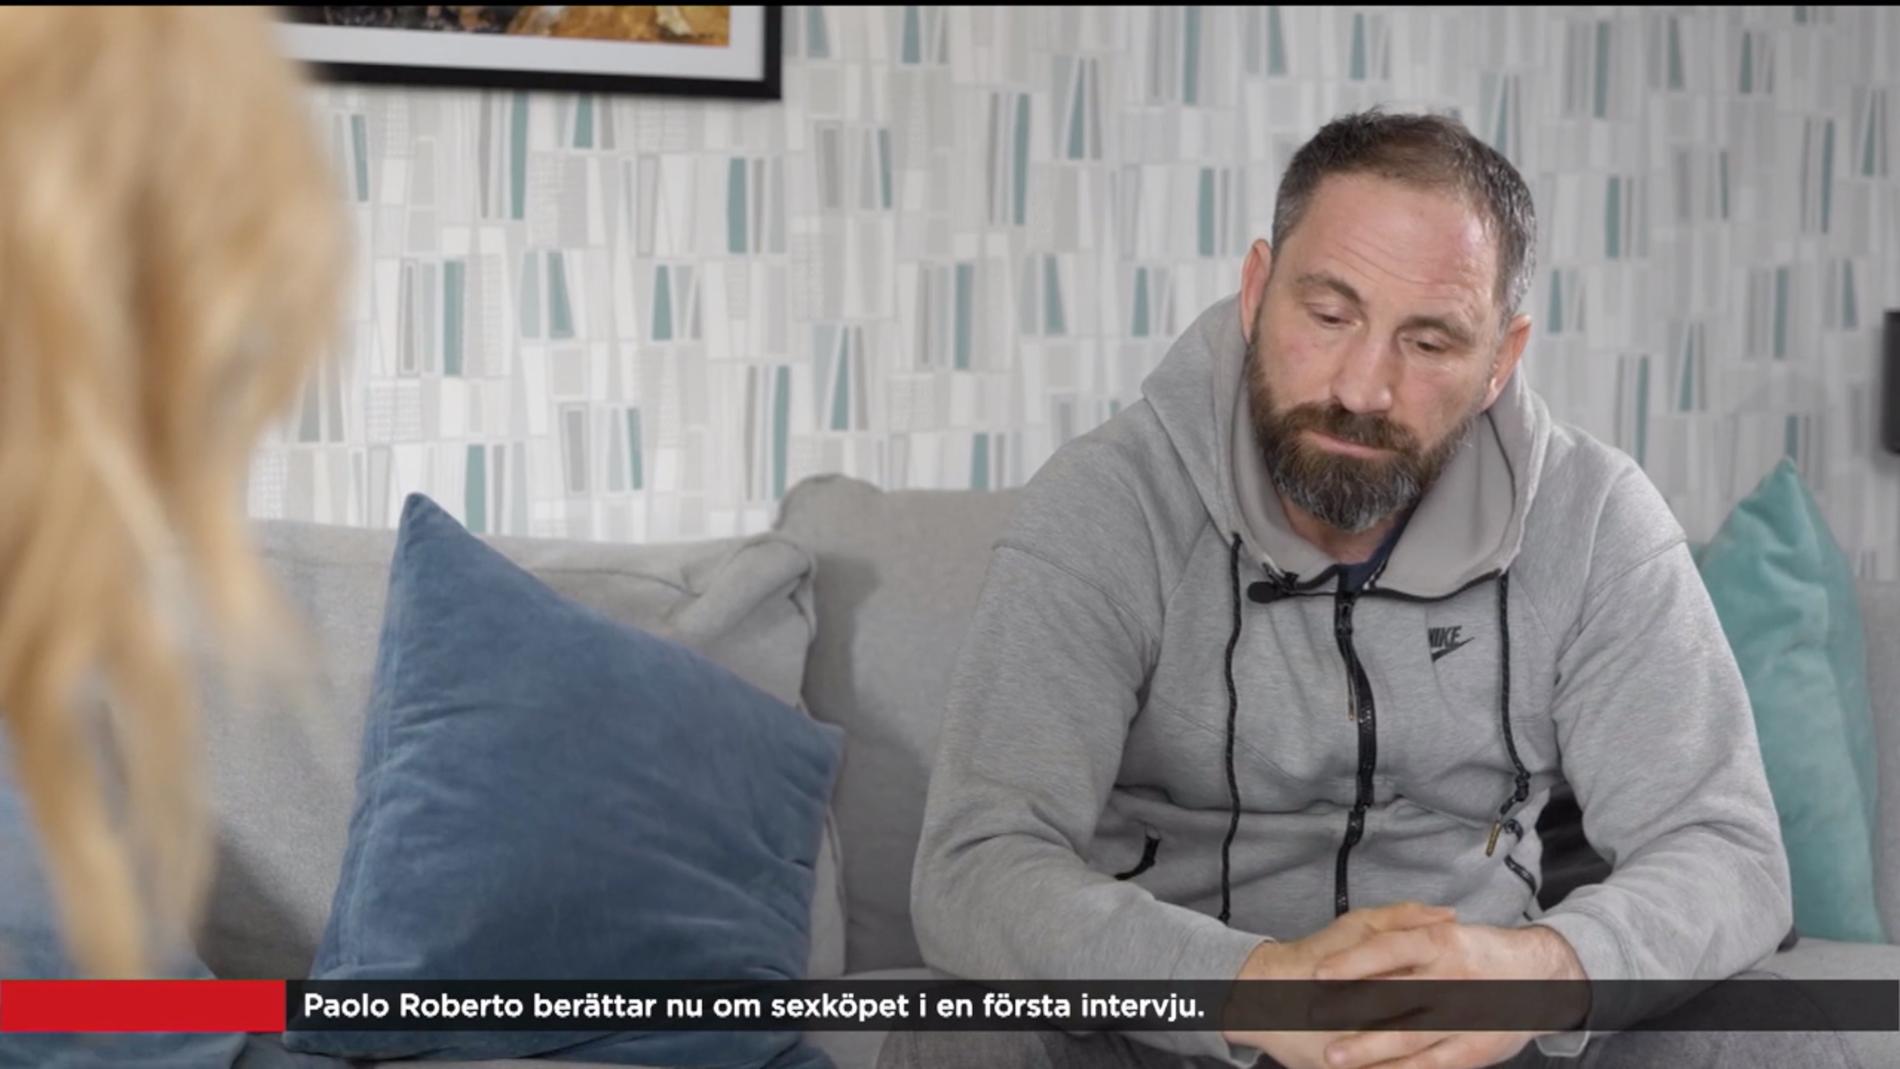 Paolo Roberto talade ut i TV4 efter det misstänka sexköpet natten mellan torsdag och fredag i en intervju med Jenny Strömstedt.